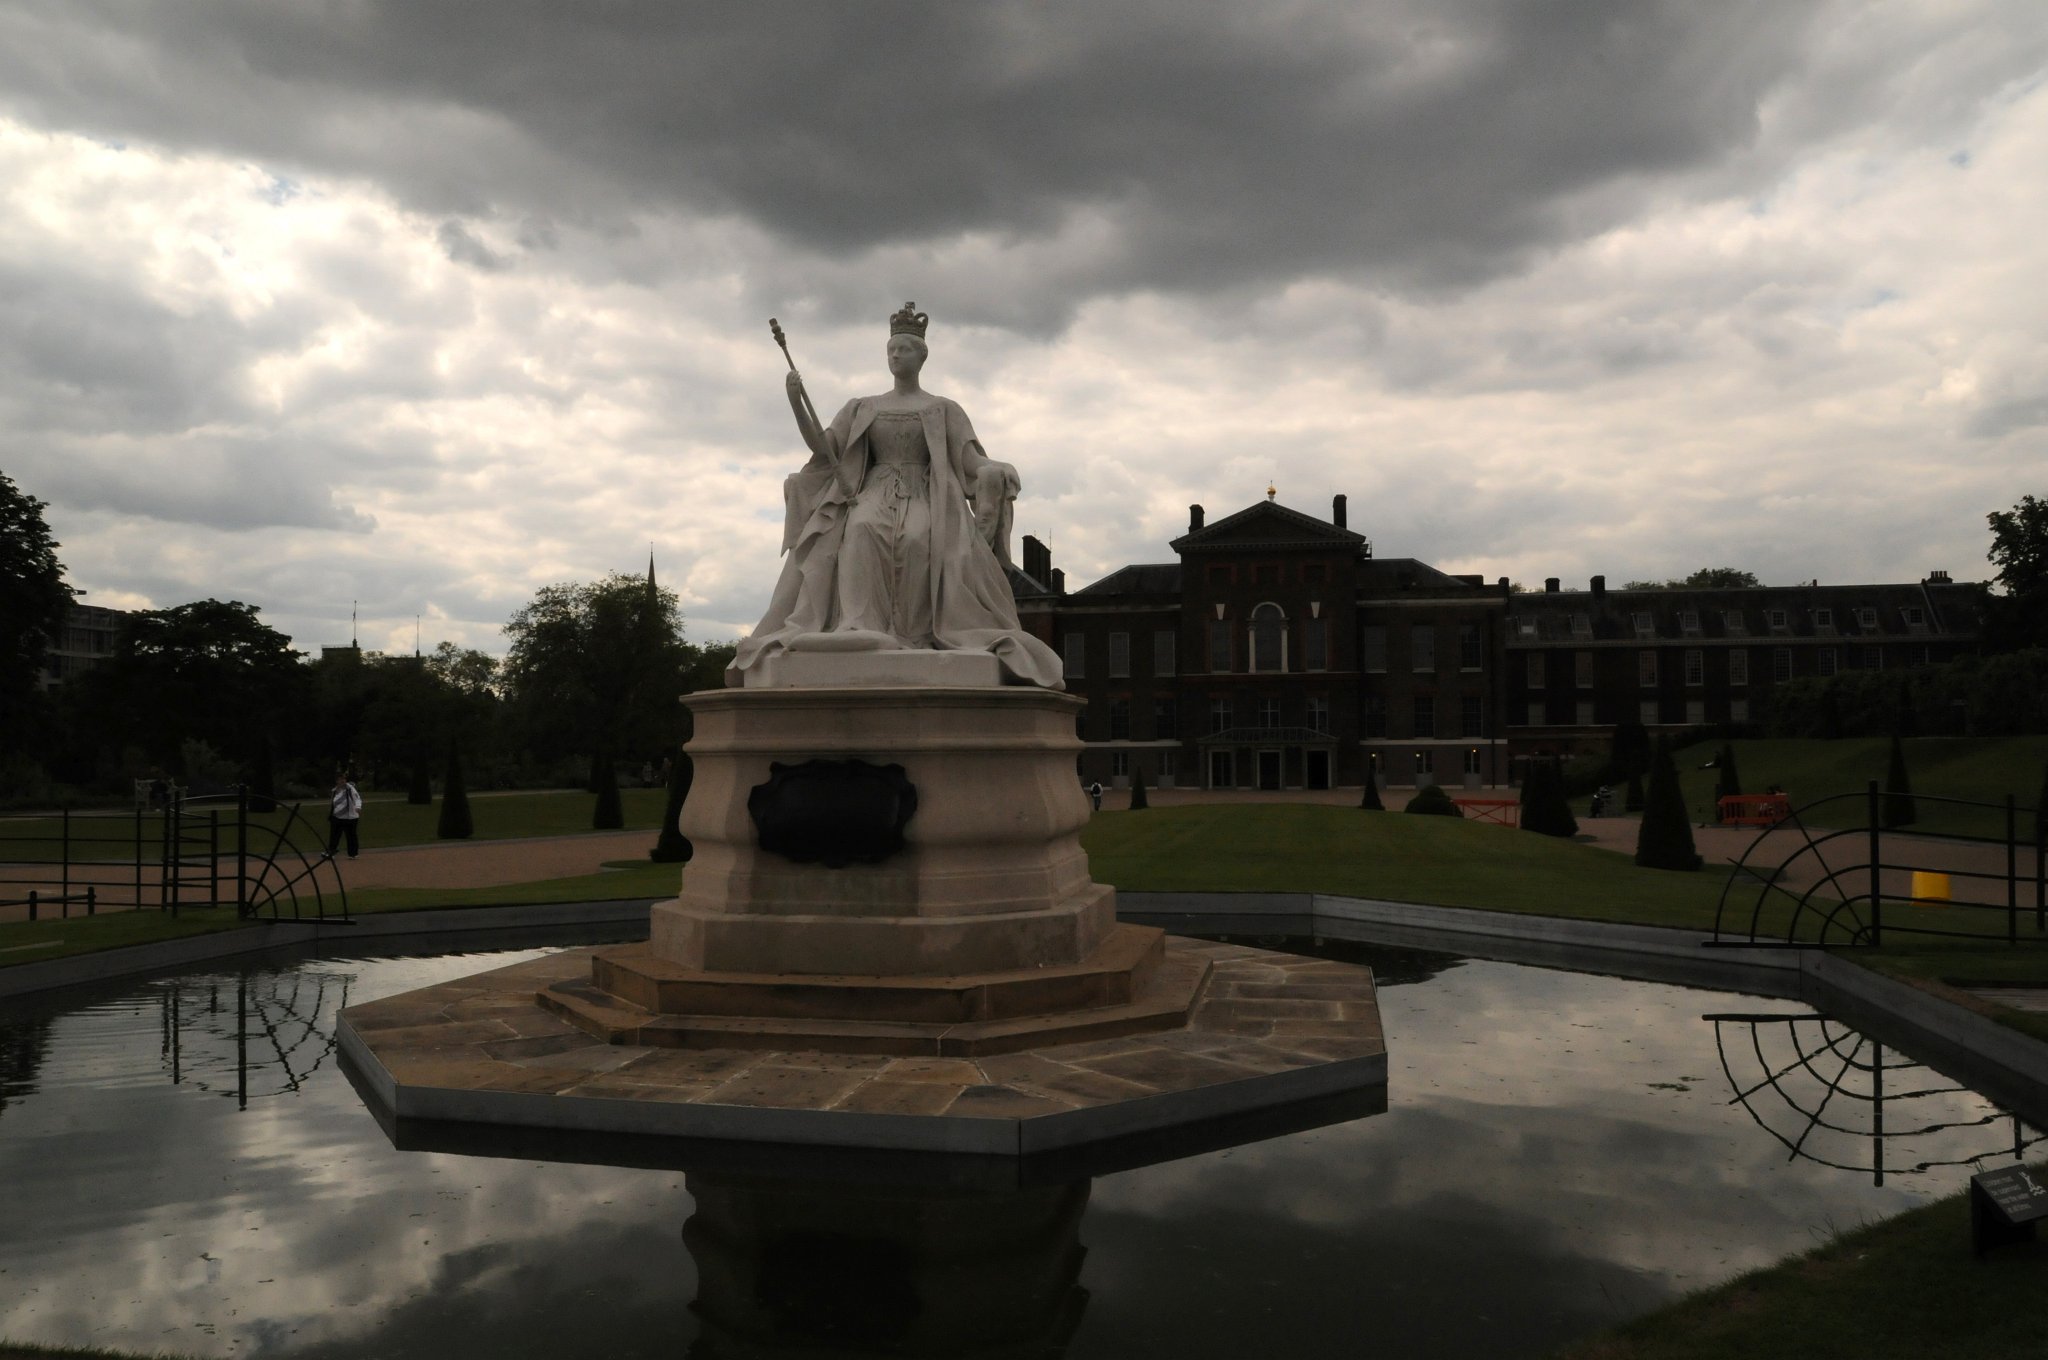 DSC_2774_2.jpg - Socha královny Victorie před Kengsingtonským palácem.